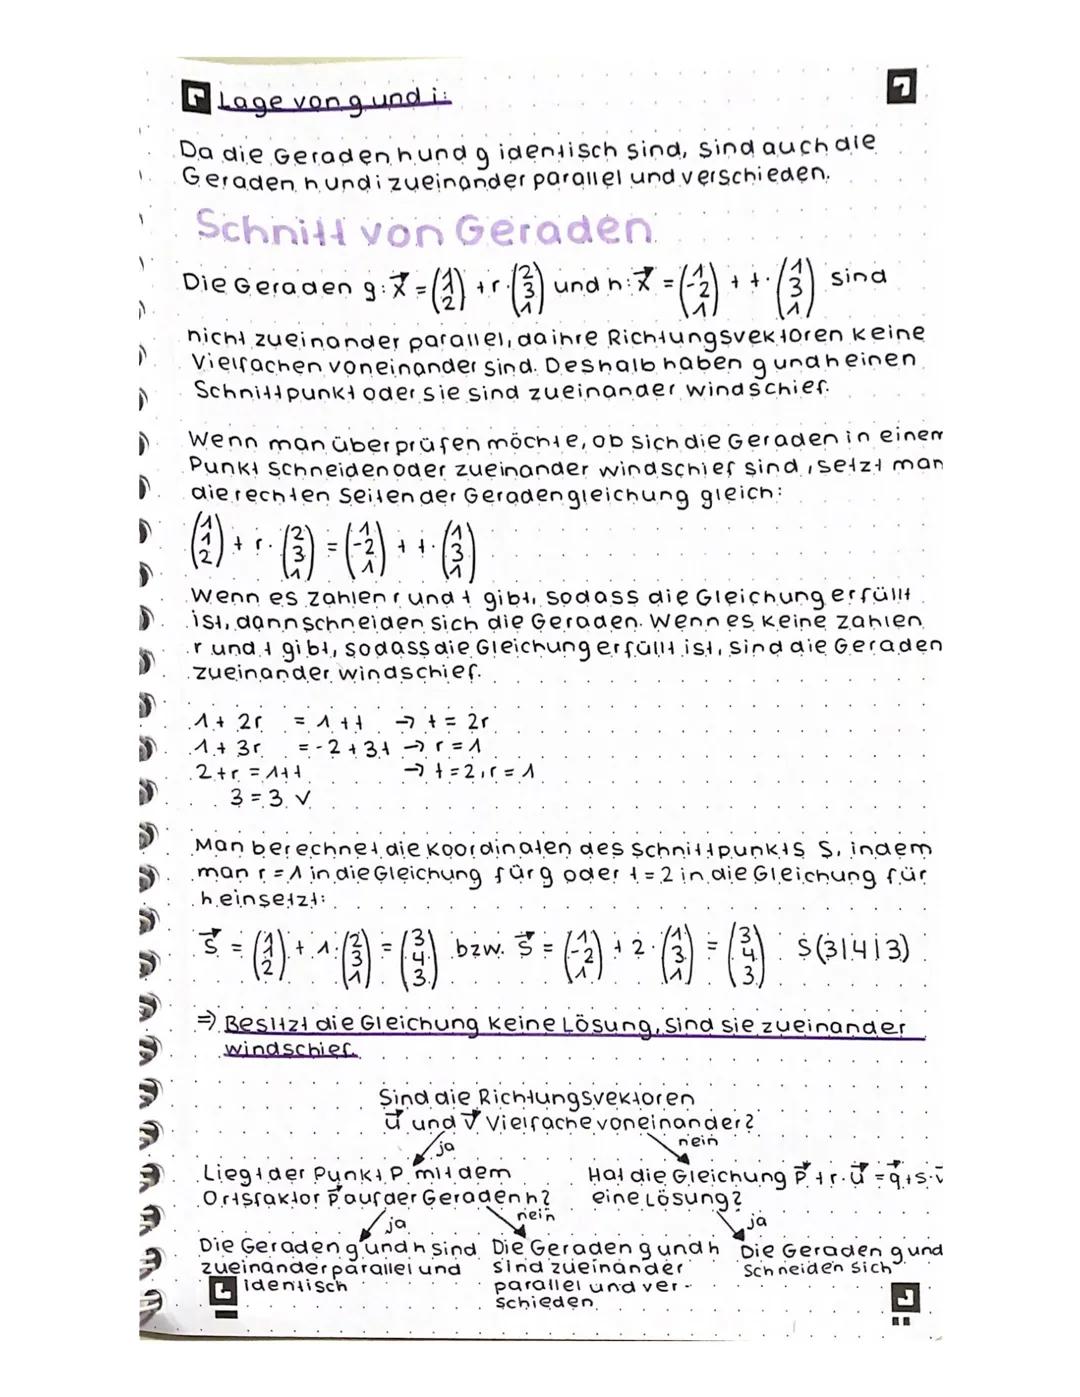 Punktprobe durchführen
A (41512) Gerade g = (+4)-(1)
1+ 3+ = 4
-77 +=1 (^in zweite und dritte zeile einsetzen)
1+ 14 = 5 wahre Aussage
0₁ +1